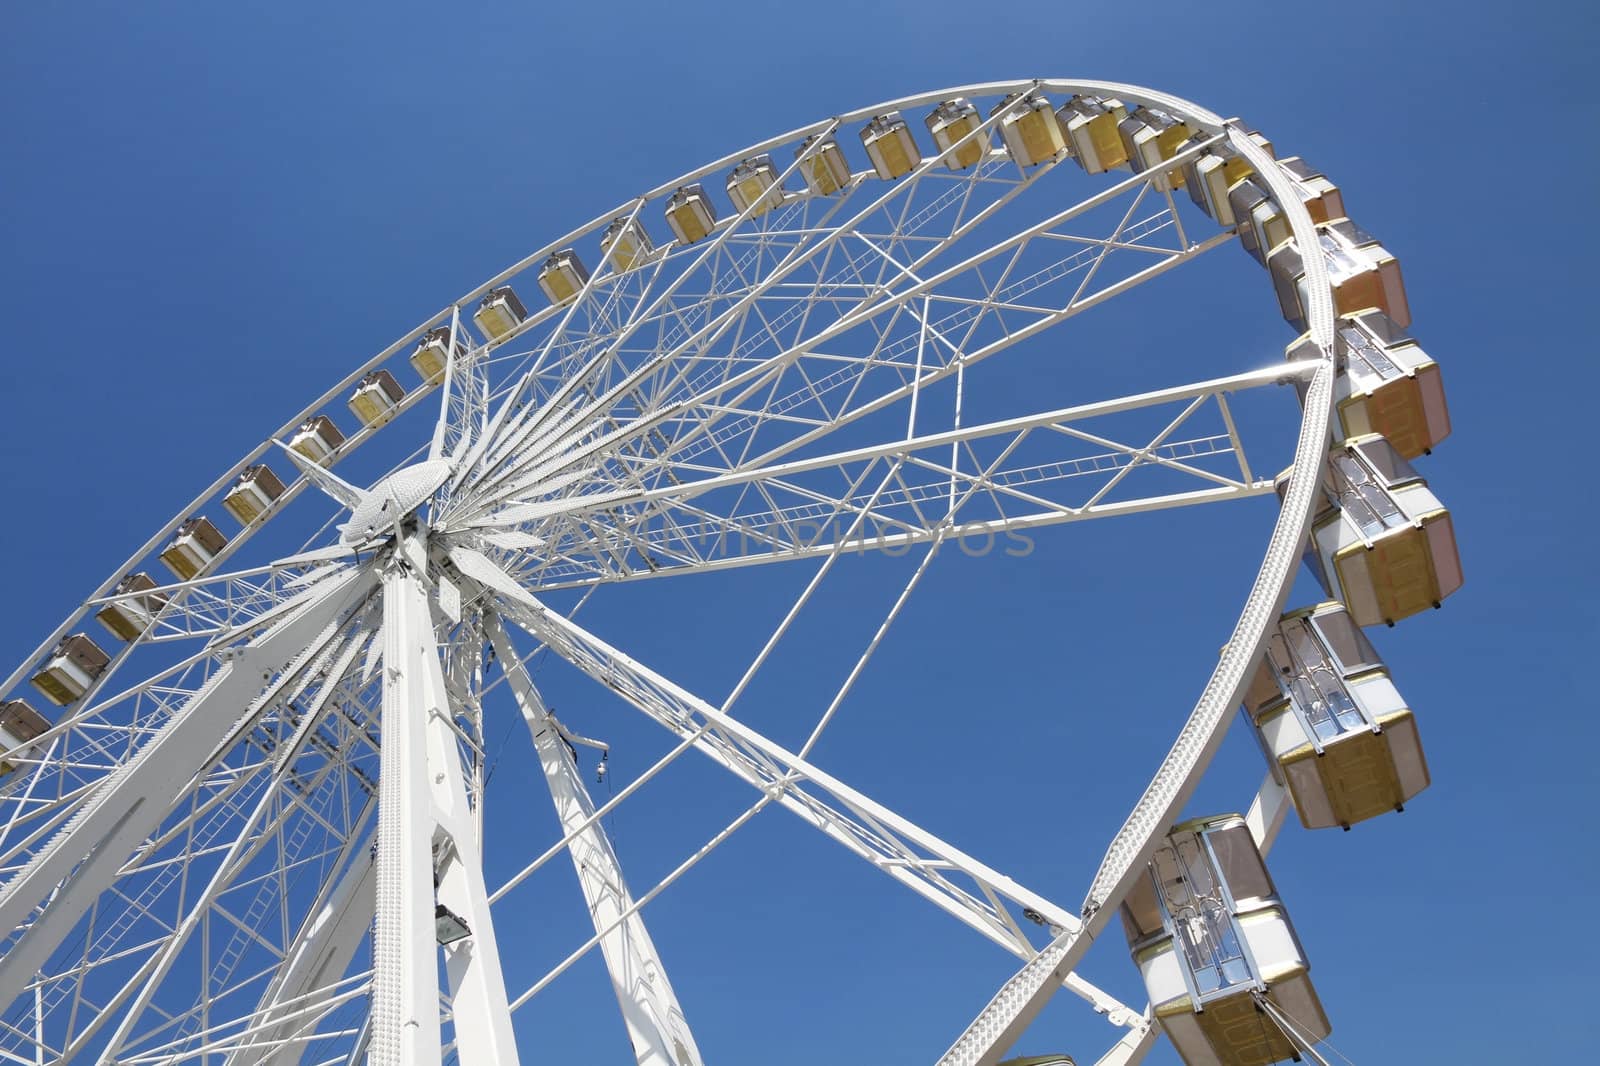 Ferris wheel in an amusement park by daboost